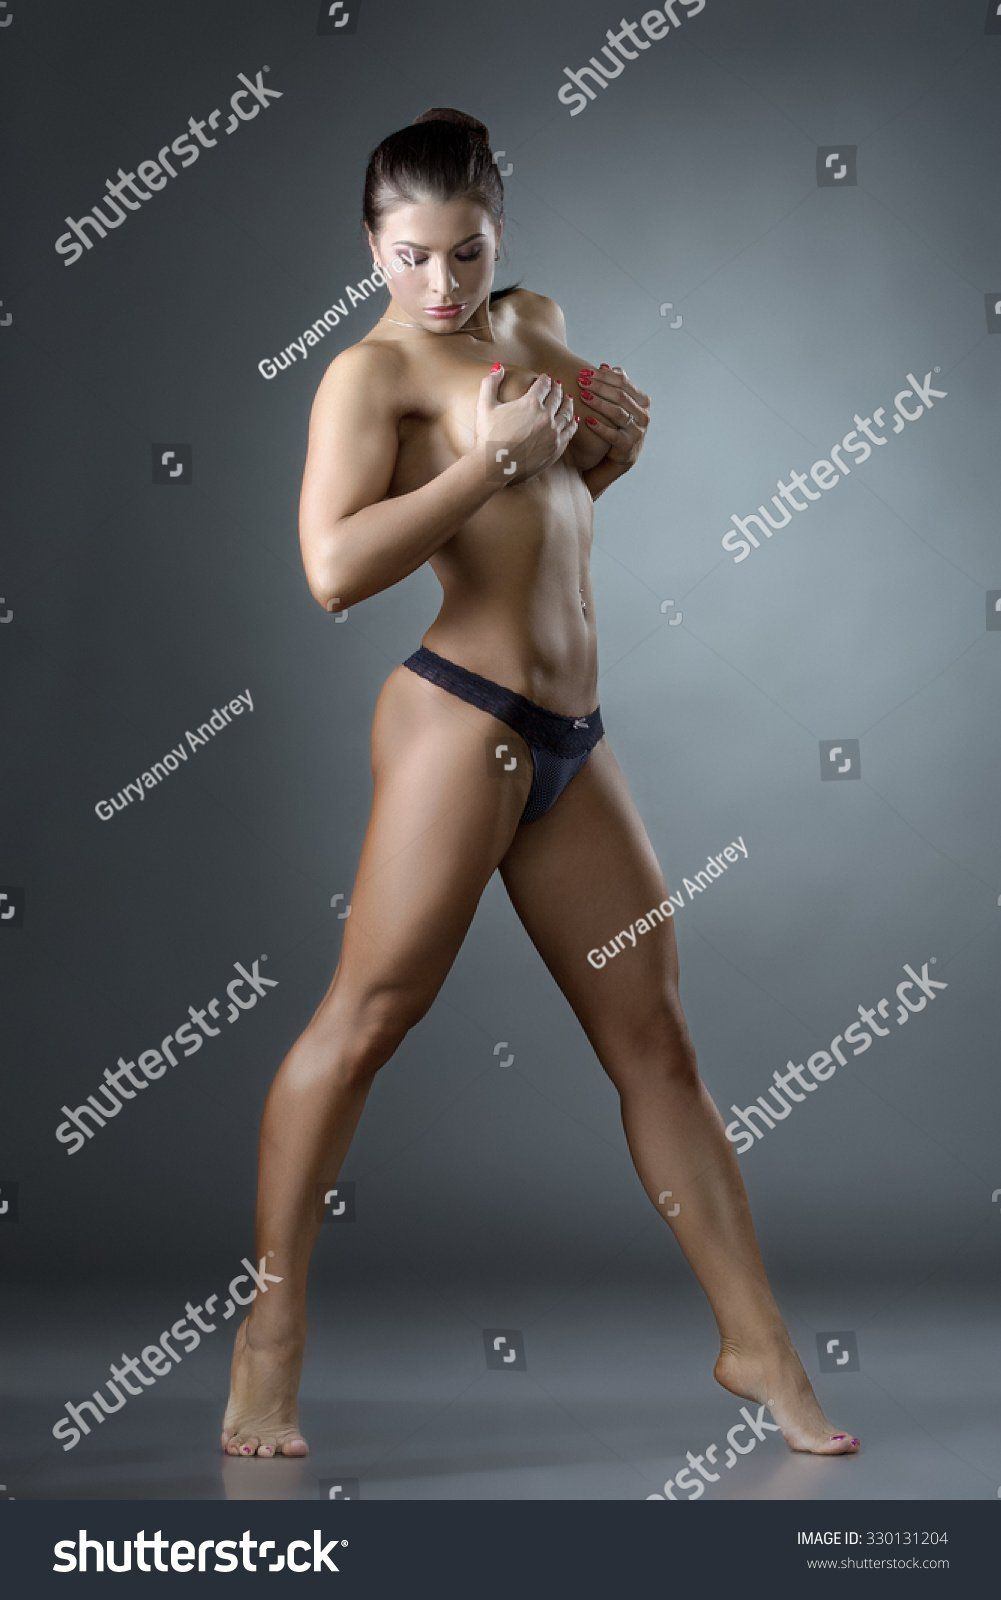 hottest female athletes naked